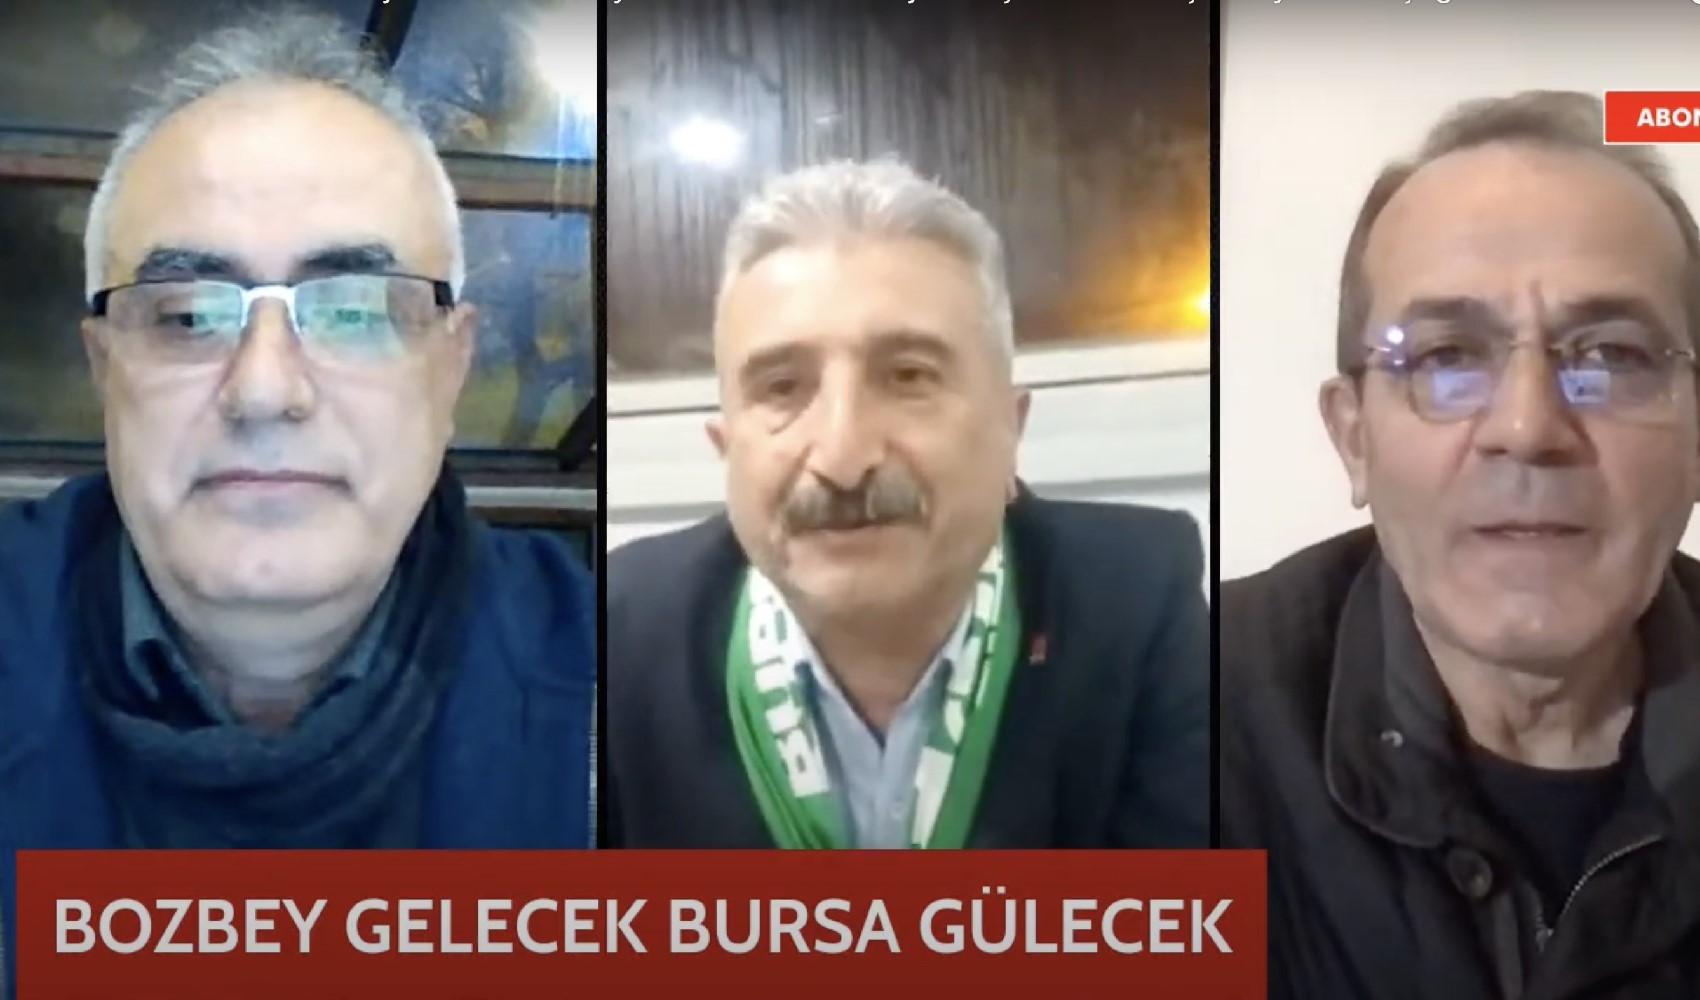 Bursa’da seçim çalışmaları: “47 yıl sonra bir ilk gerçekleşecek”